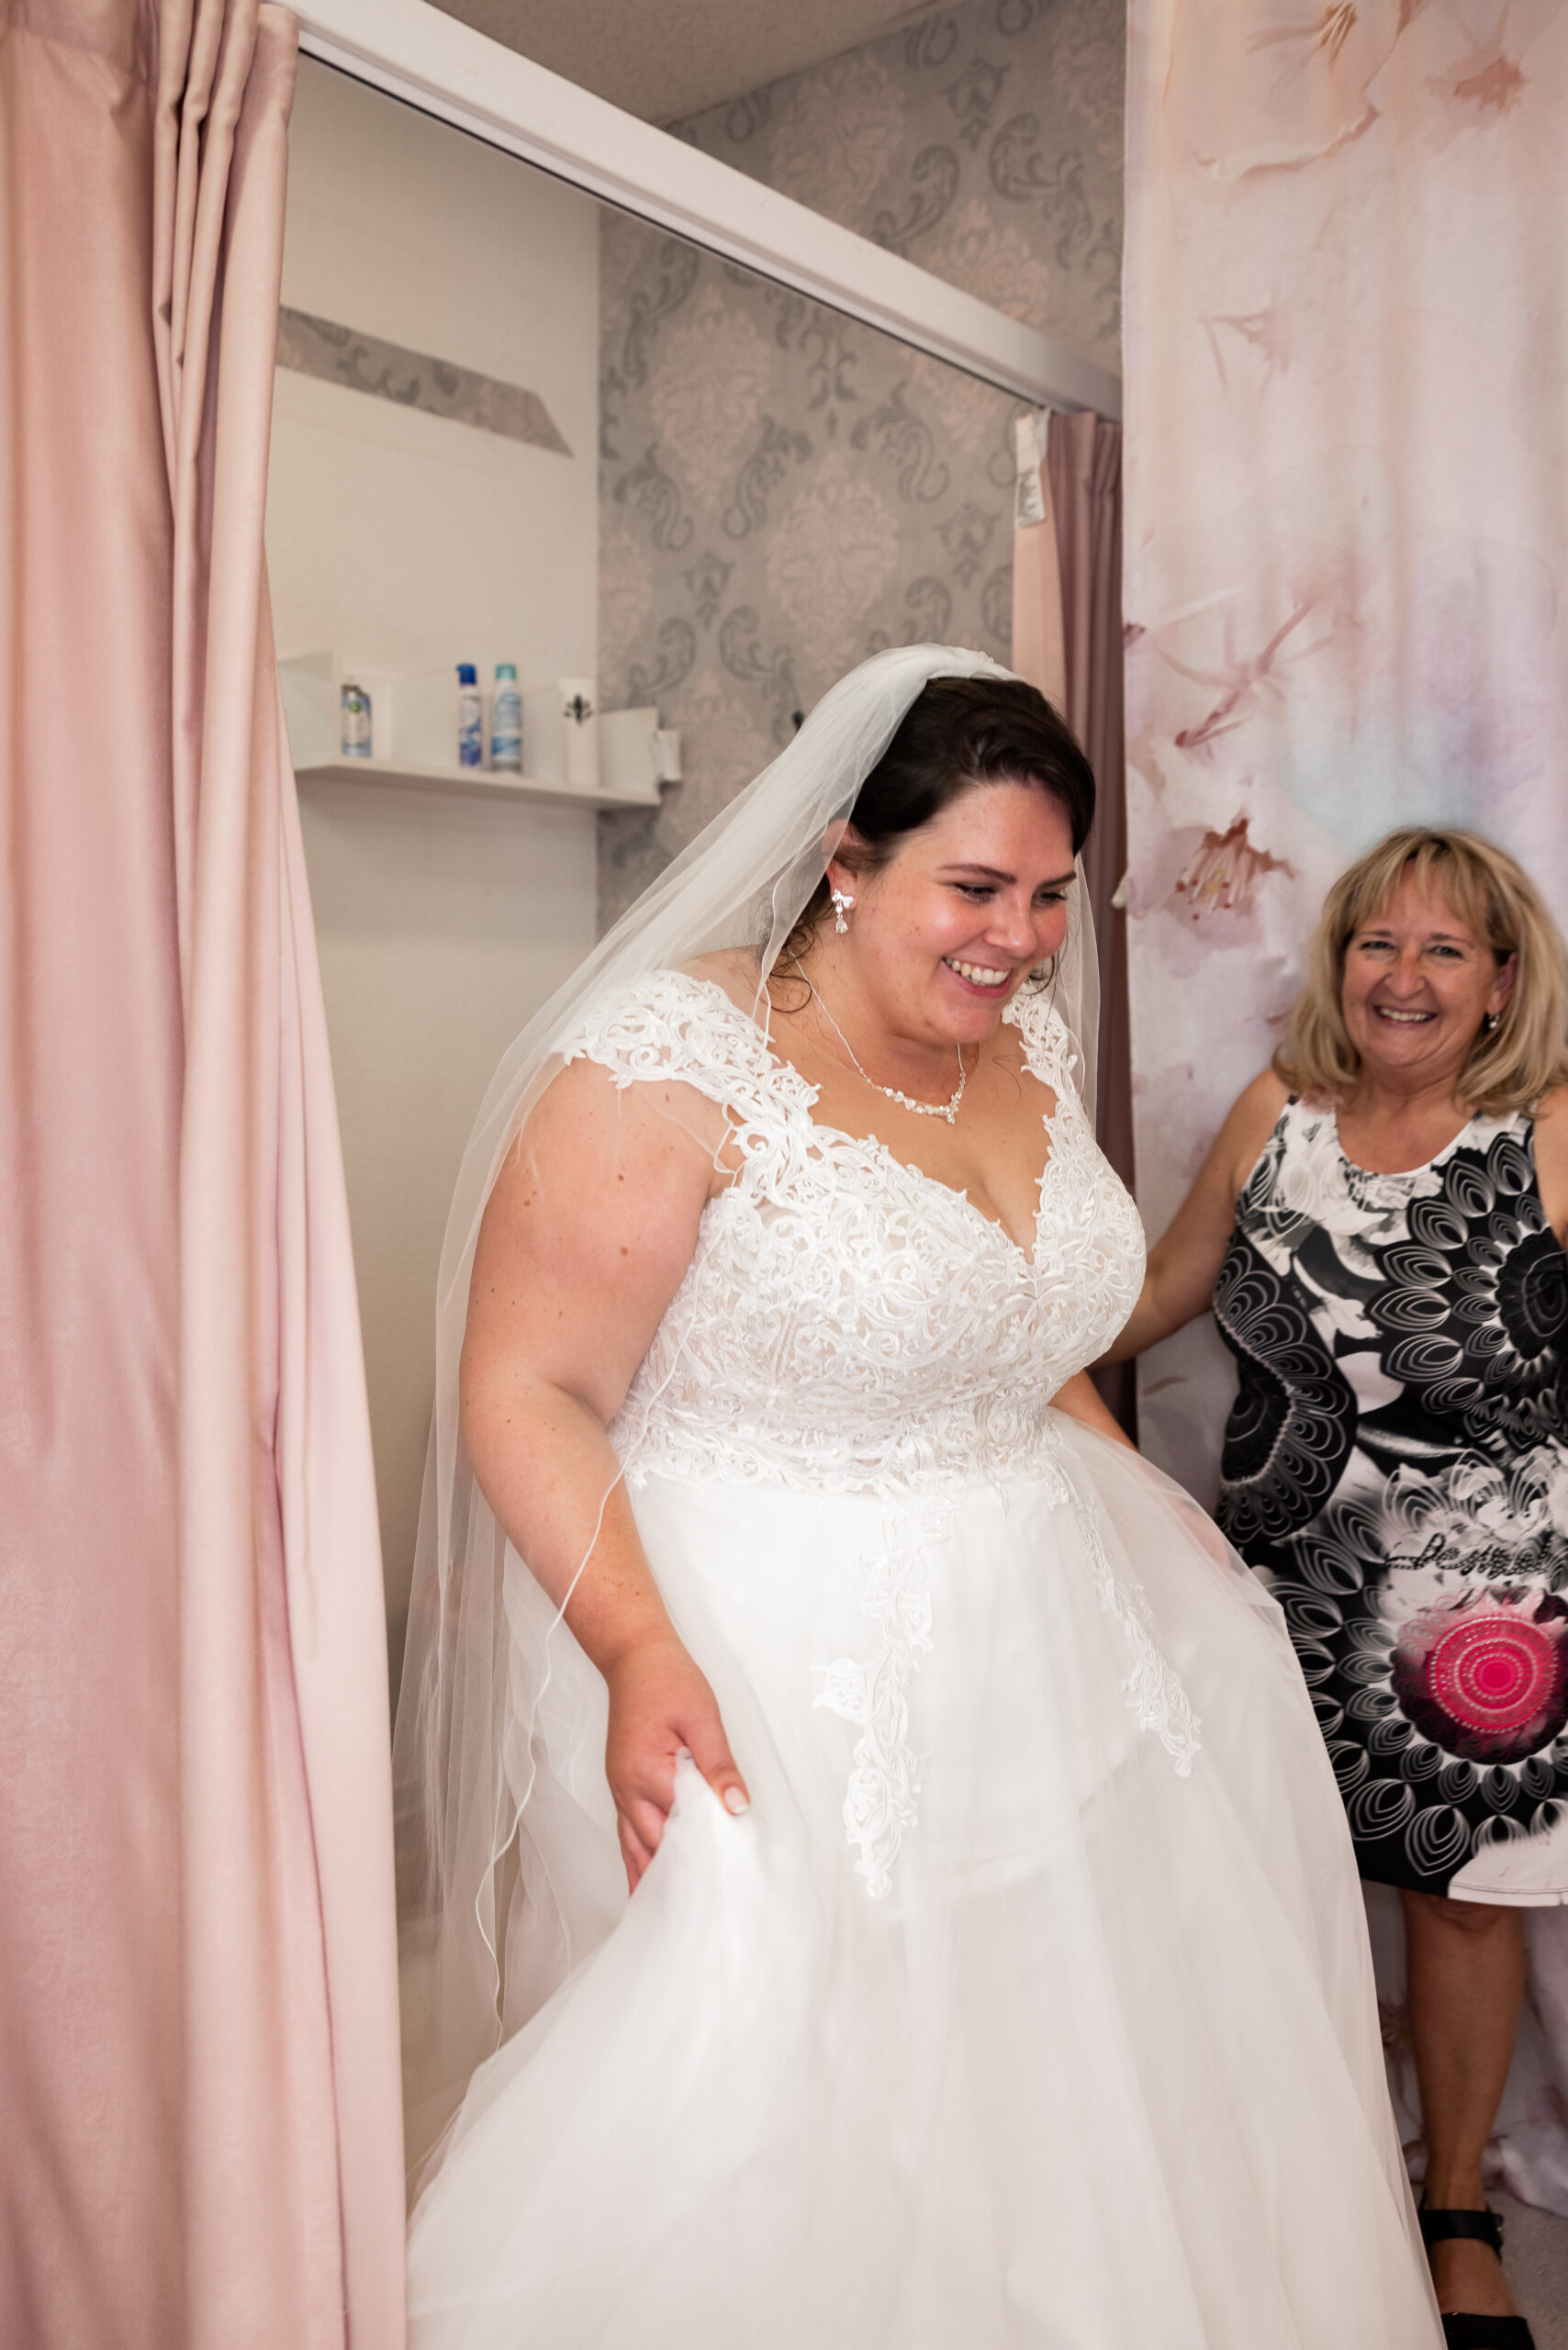 Brautkleidanprobe bei Bianca's Brautmoden, spezialisiert auf Curvybrautmoden für Braut und Bräutigam. Viele Kleider auch für Frauen mit großem Busen und zur standesamtlichen Trauung.